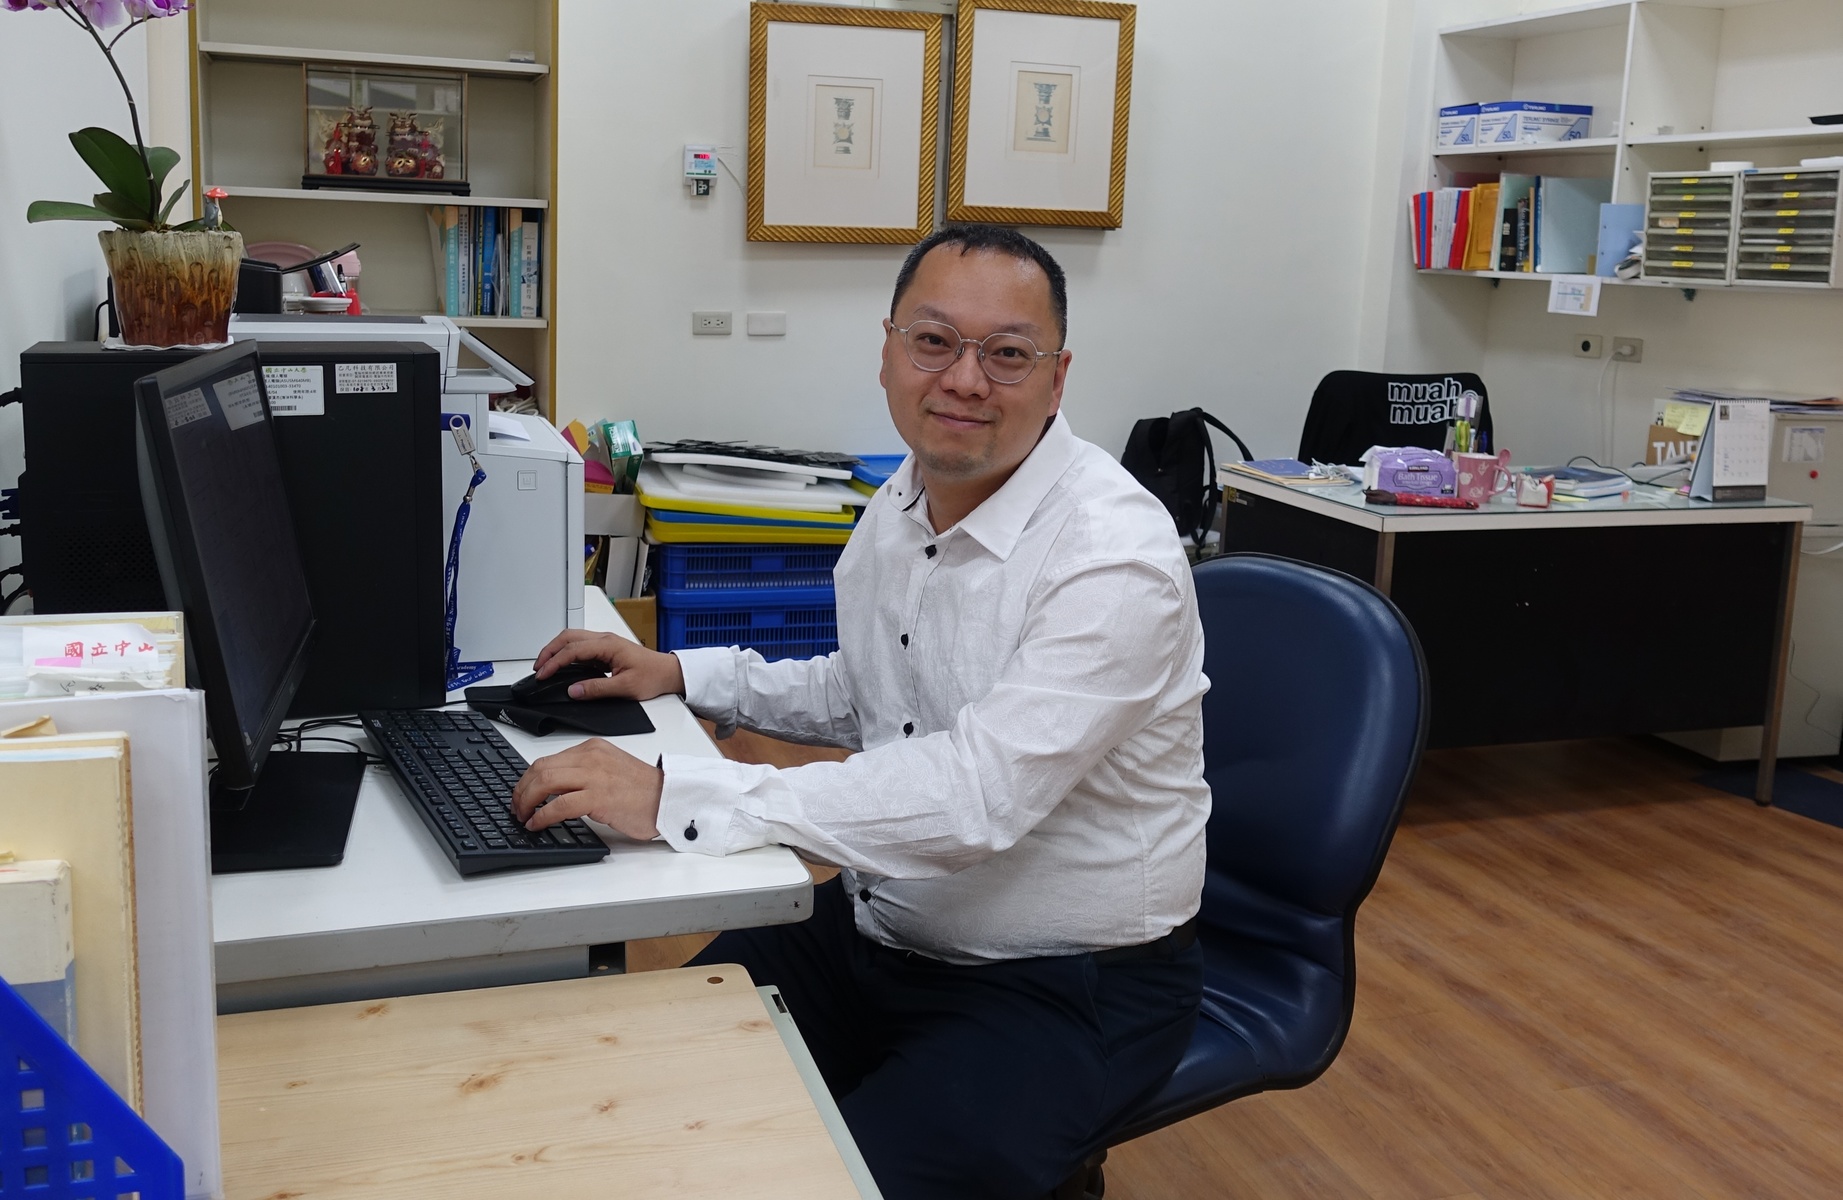 Assistant Professor Hon-Kit Lui